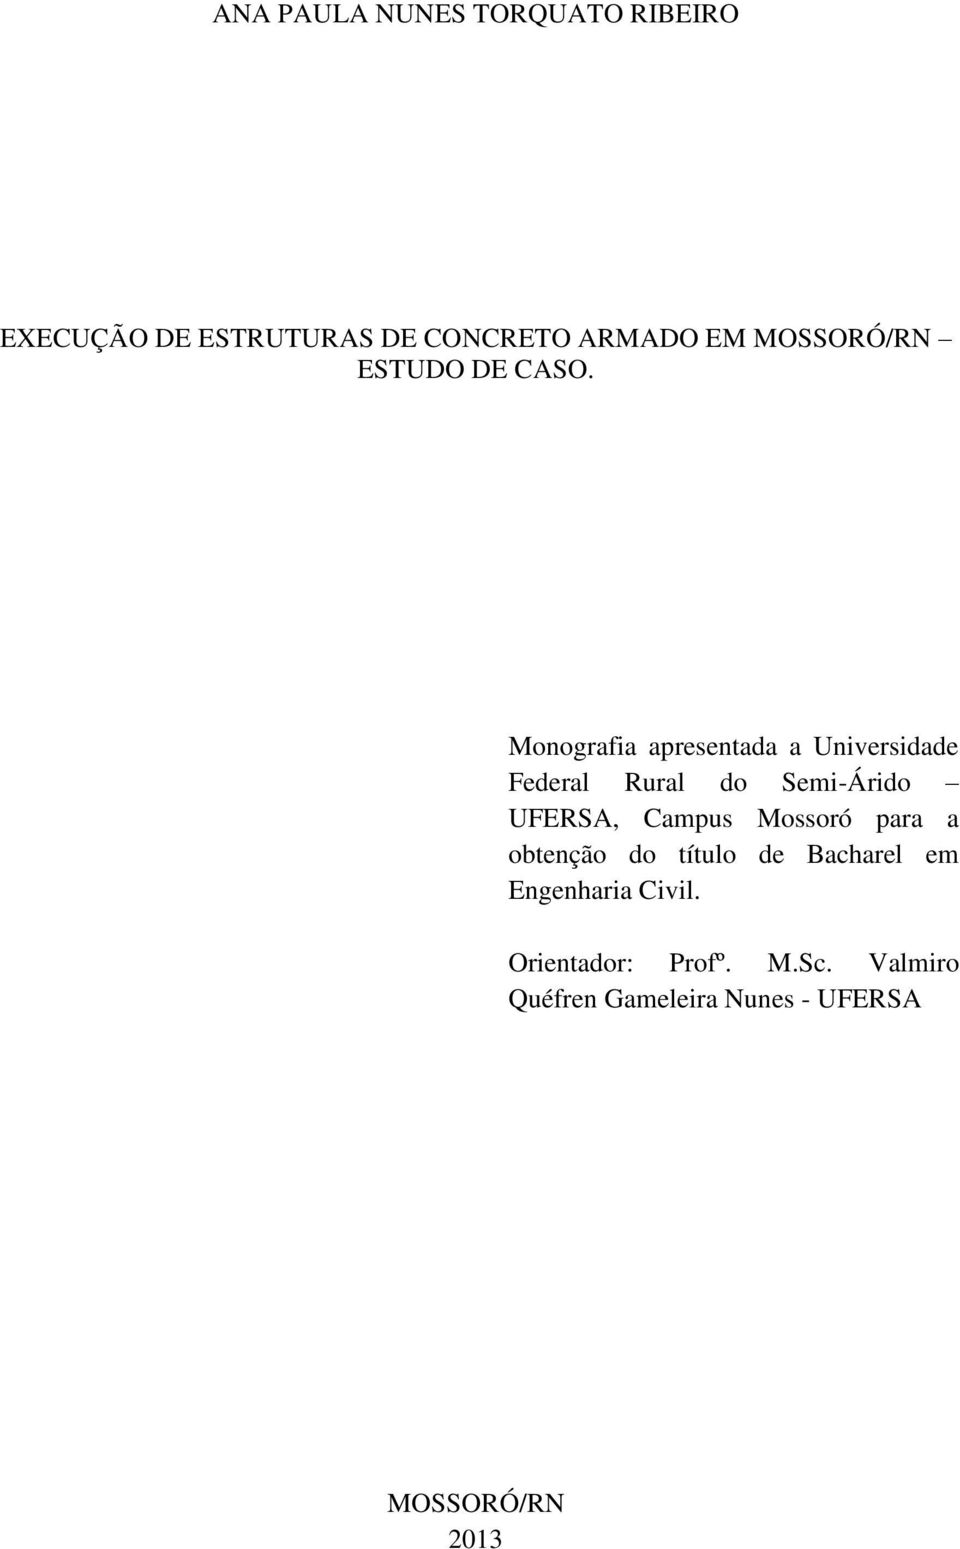 Monografia apresentada a Universidade Federal Rural do Semi-Árido UFERSA, Campus